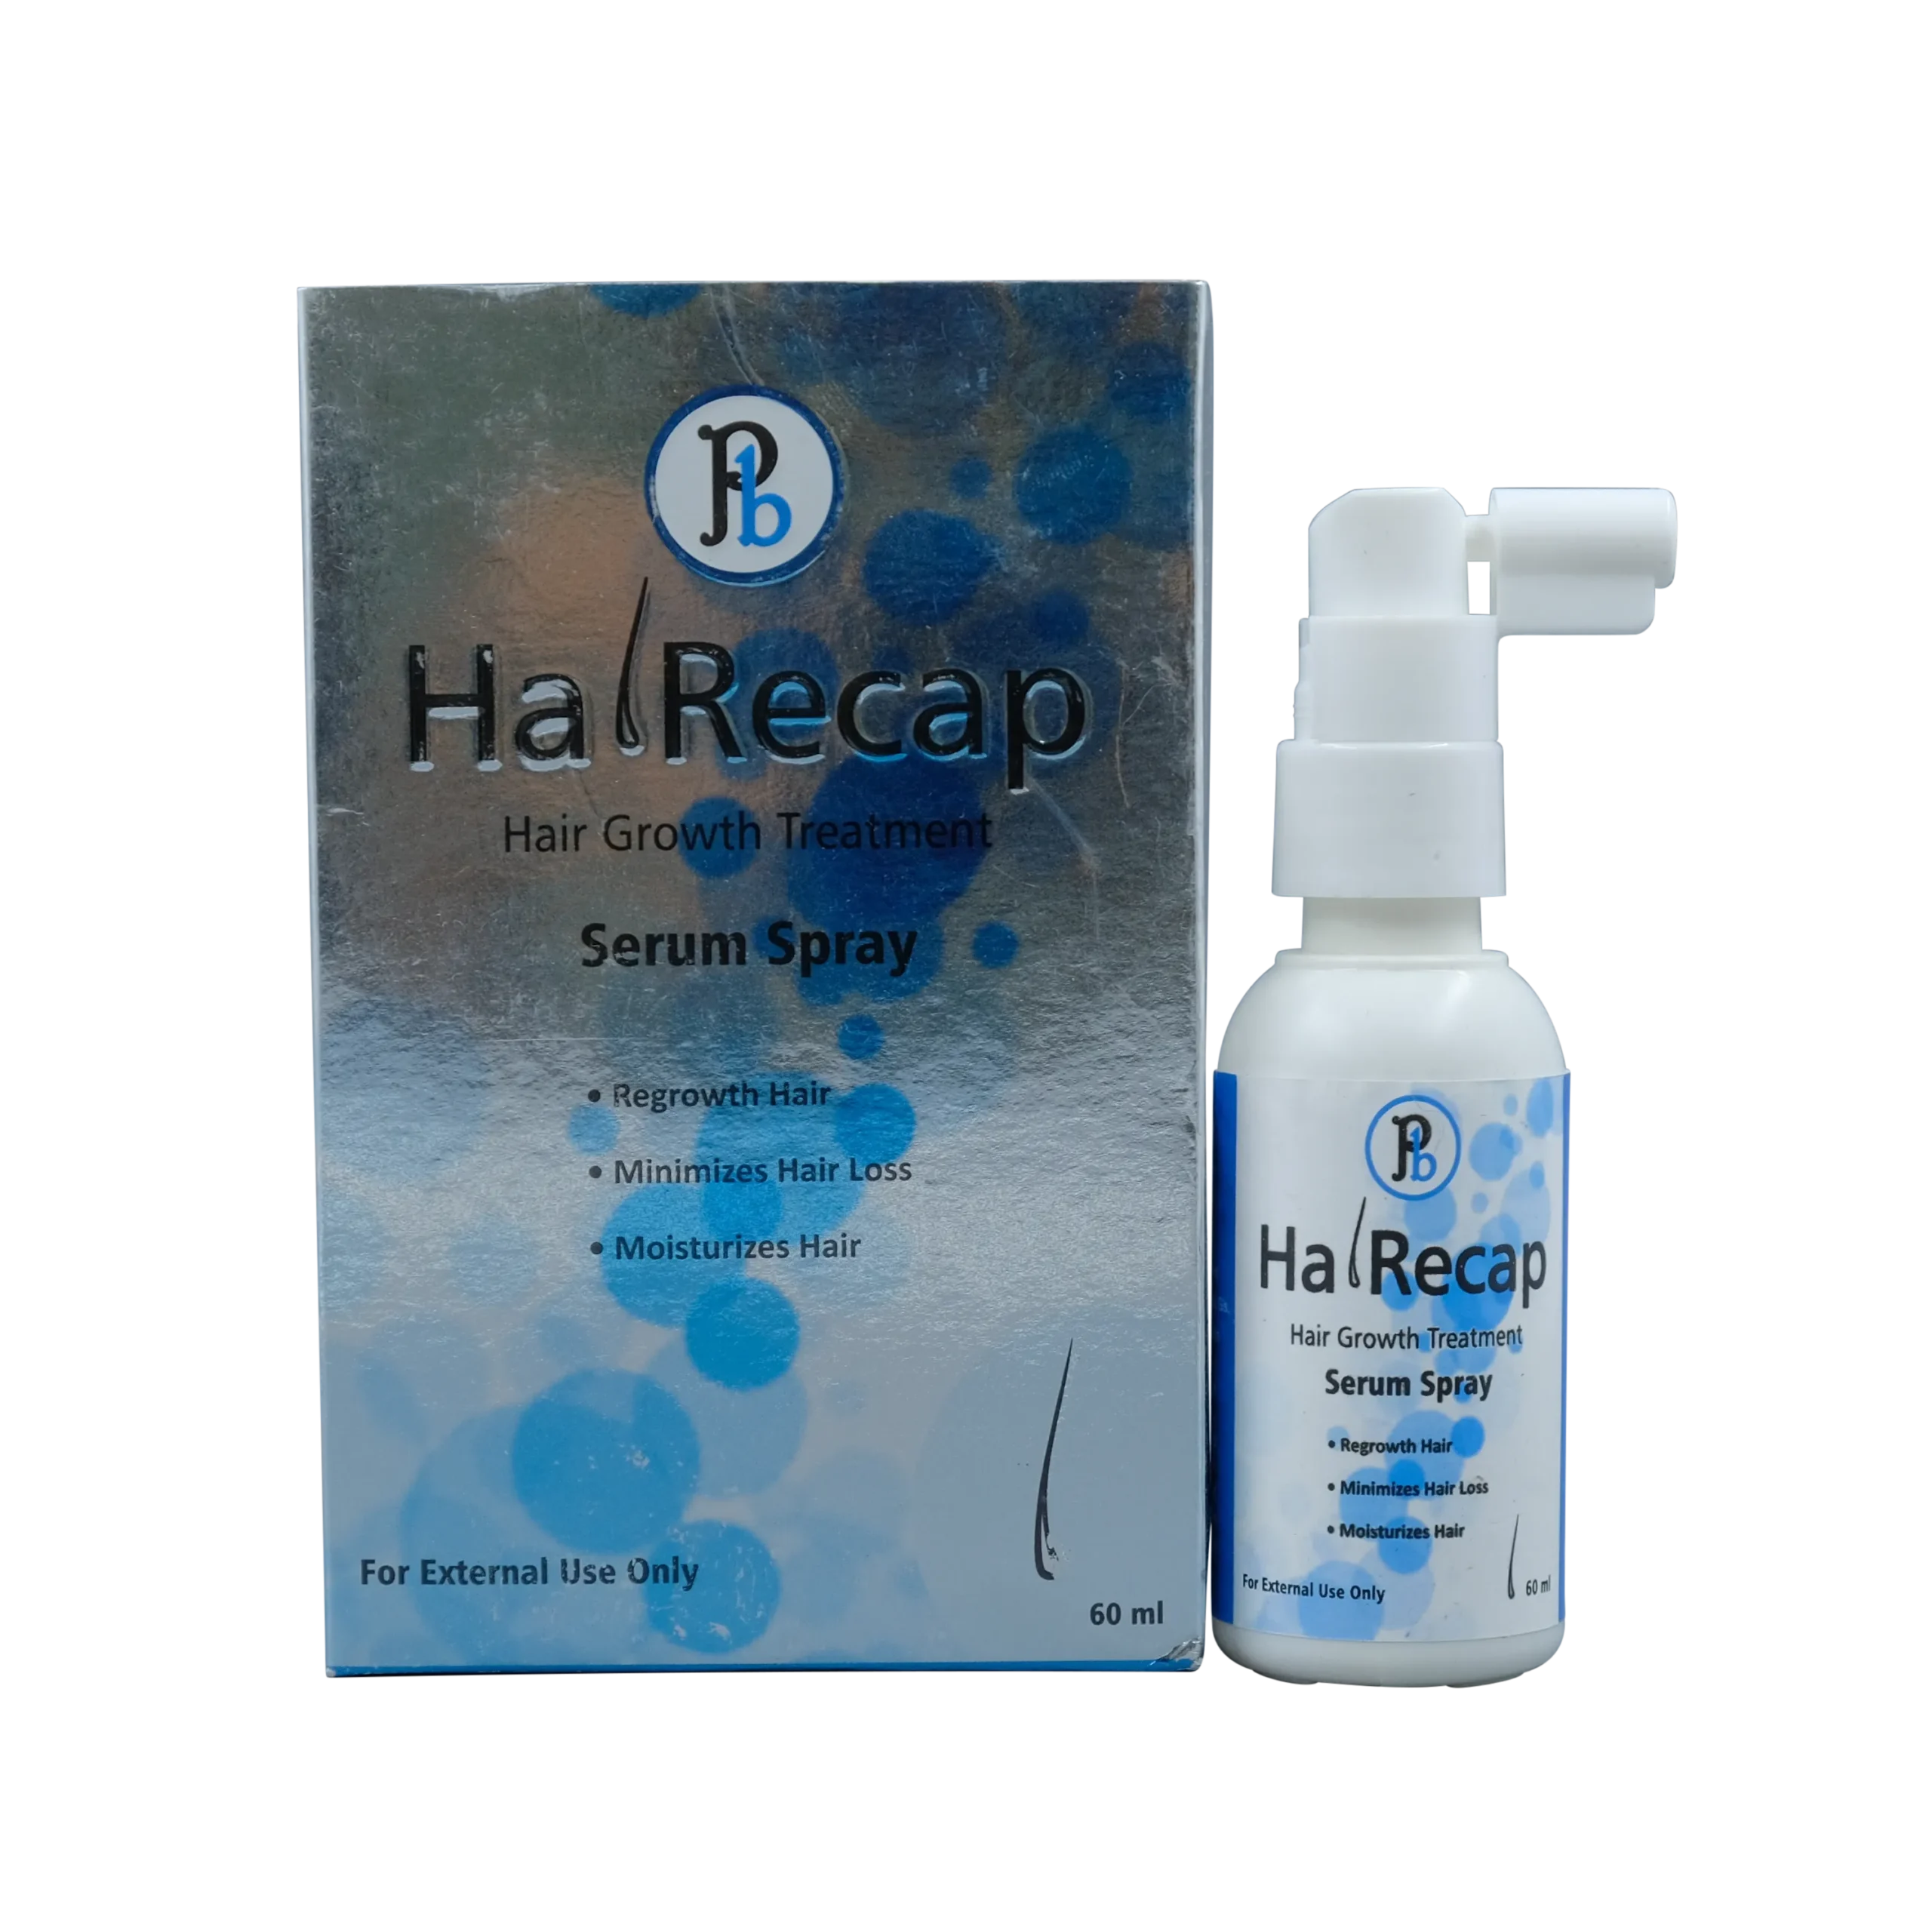 hairecap hair growth serum